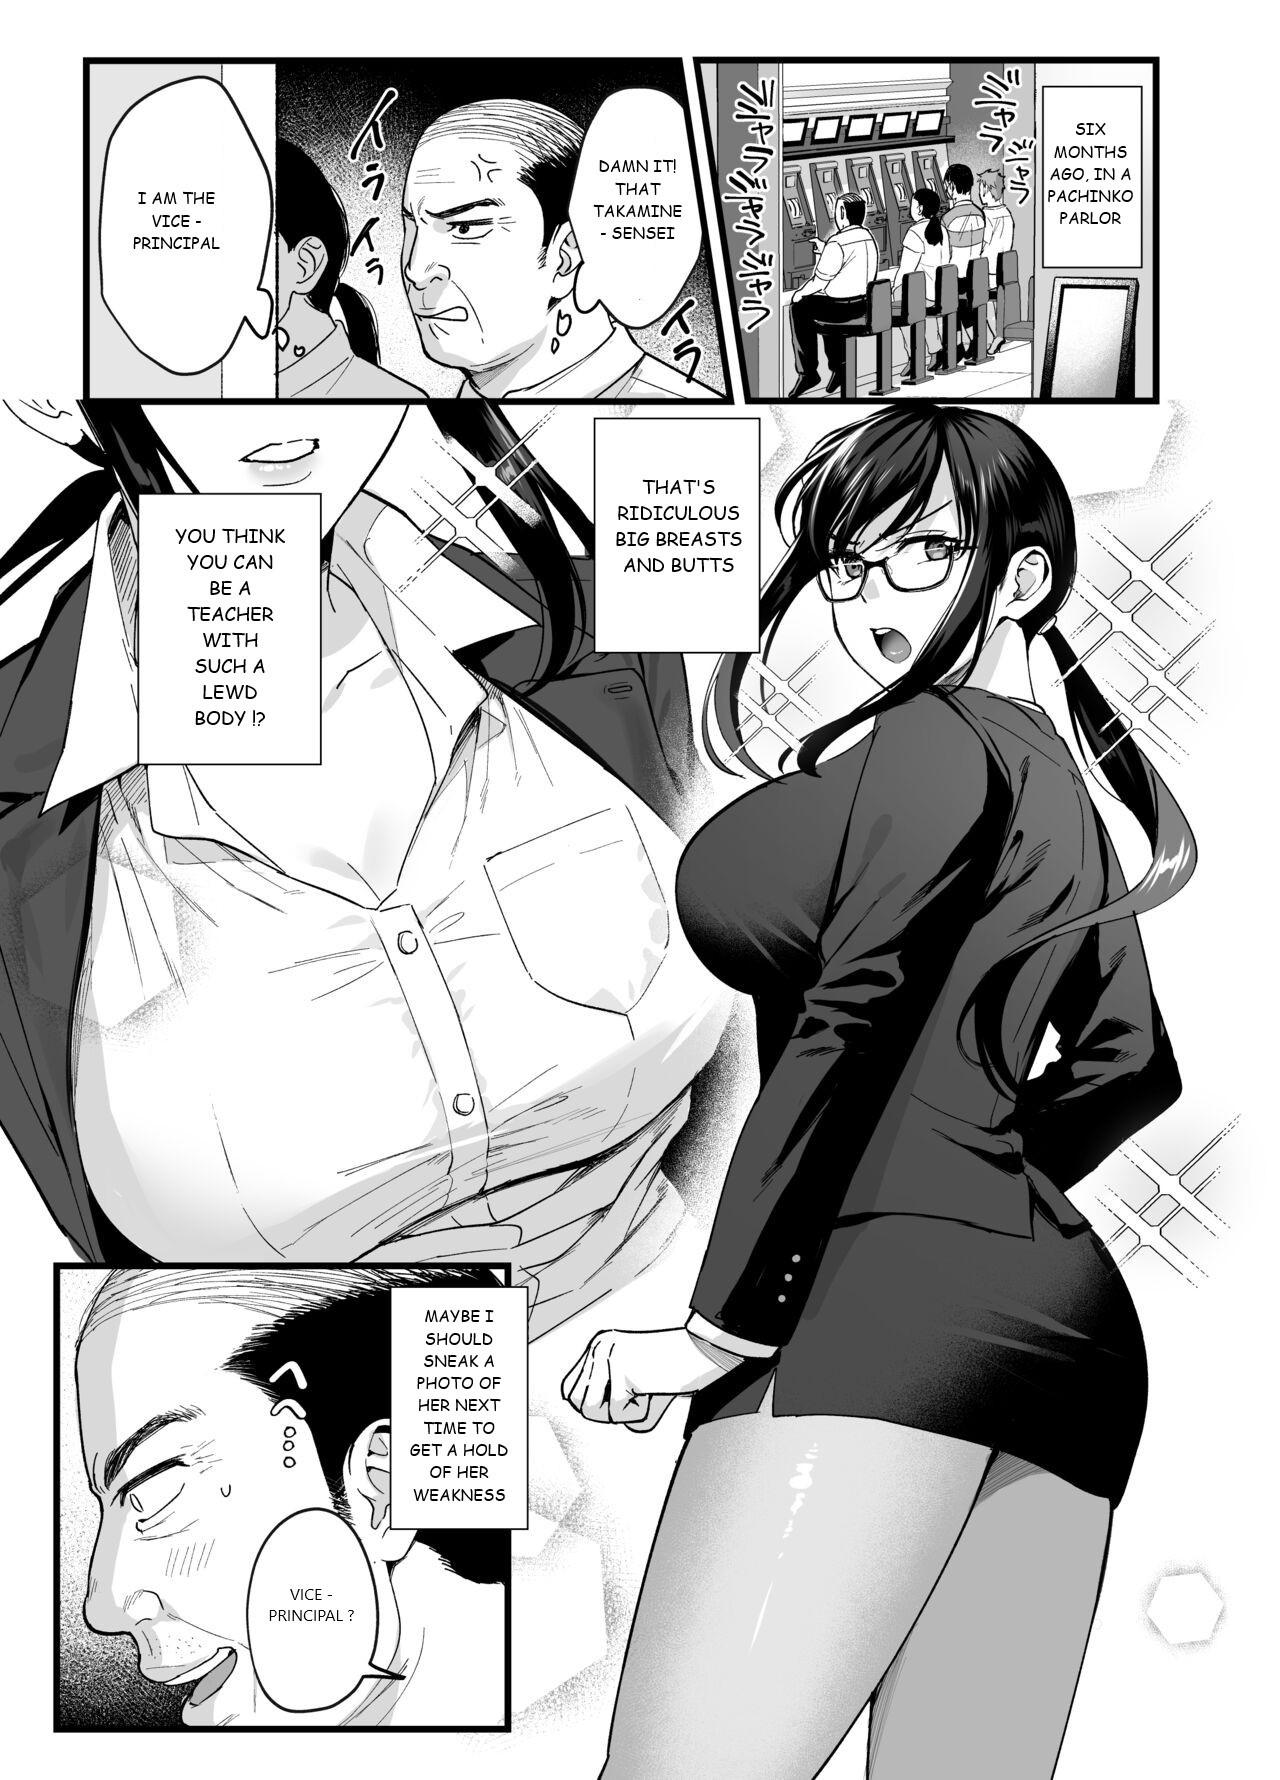 Doggy Toshoshitsu no Kanojo 6 Chicks - Page 2